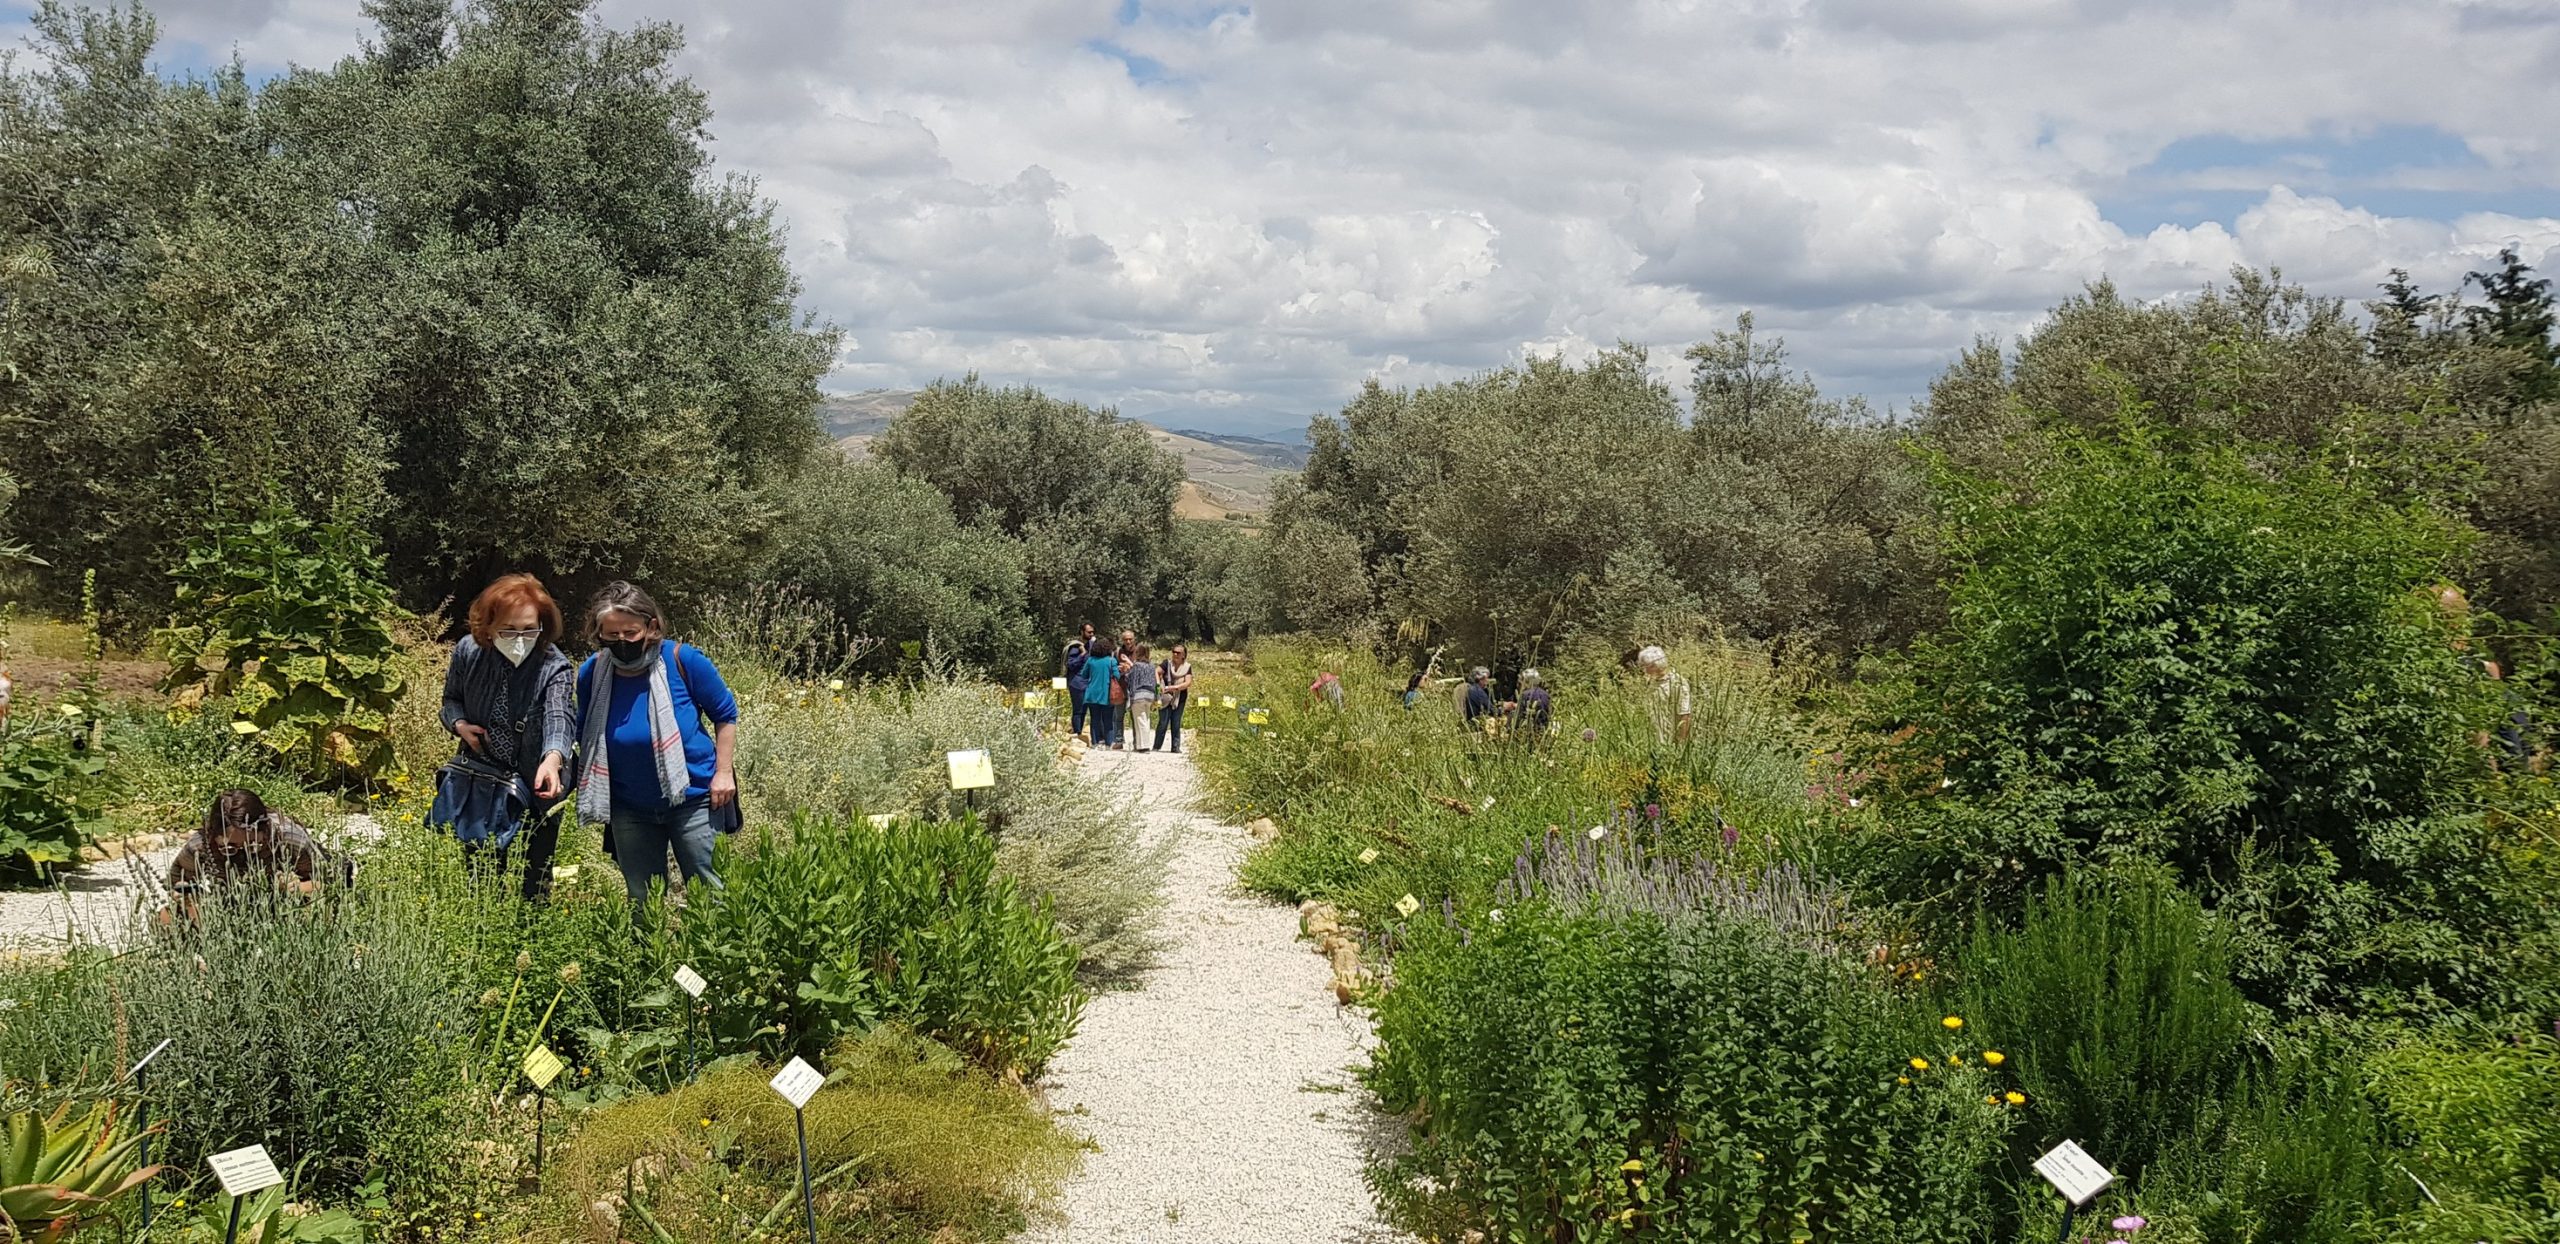 A Caltanissetta, grazie a Lucia Termini e Amedeo Falci, è nato   il giardino botanico “Brassica tineoi”